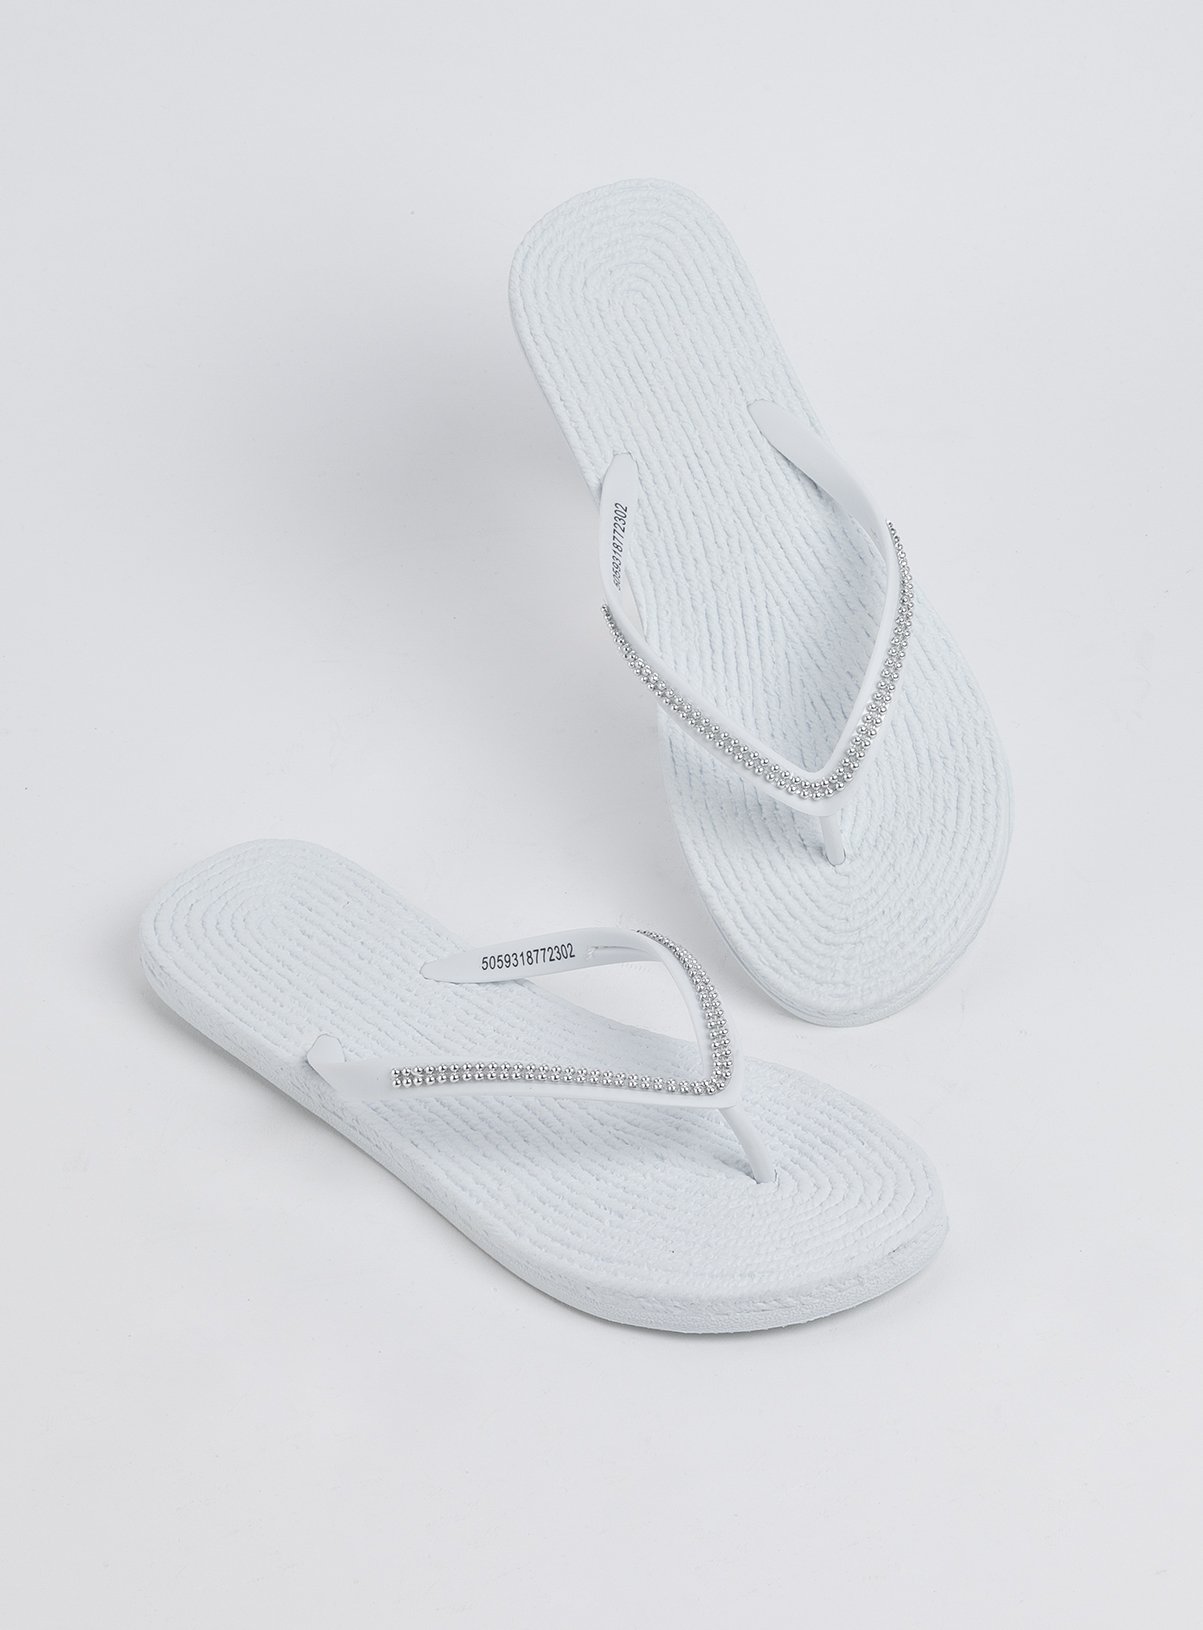 white flip flops